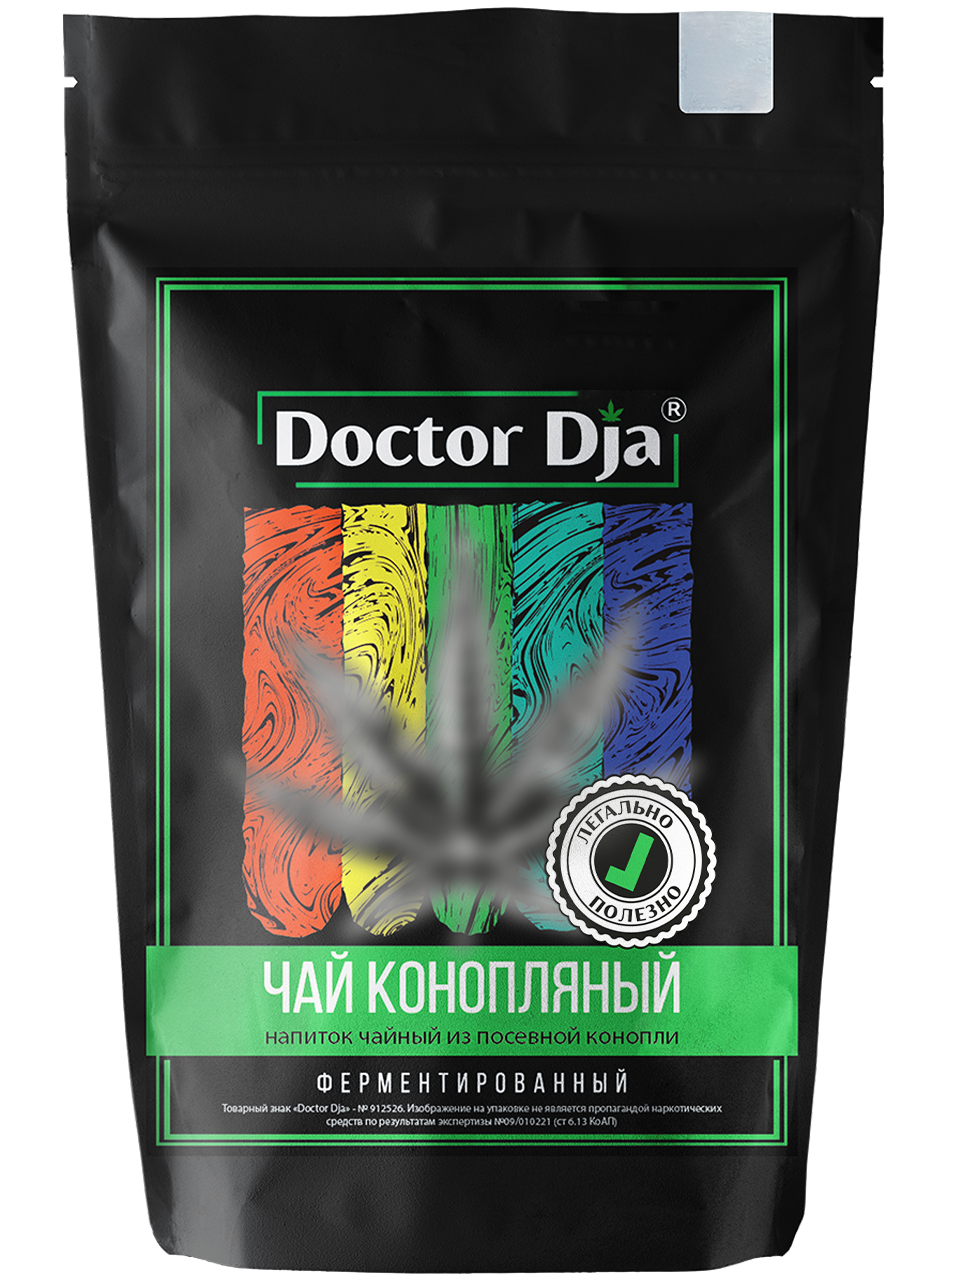 Конопляный чай "Doctor Dja" ферментированный